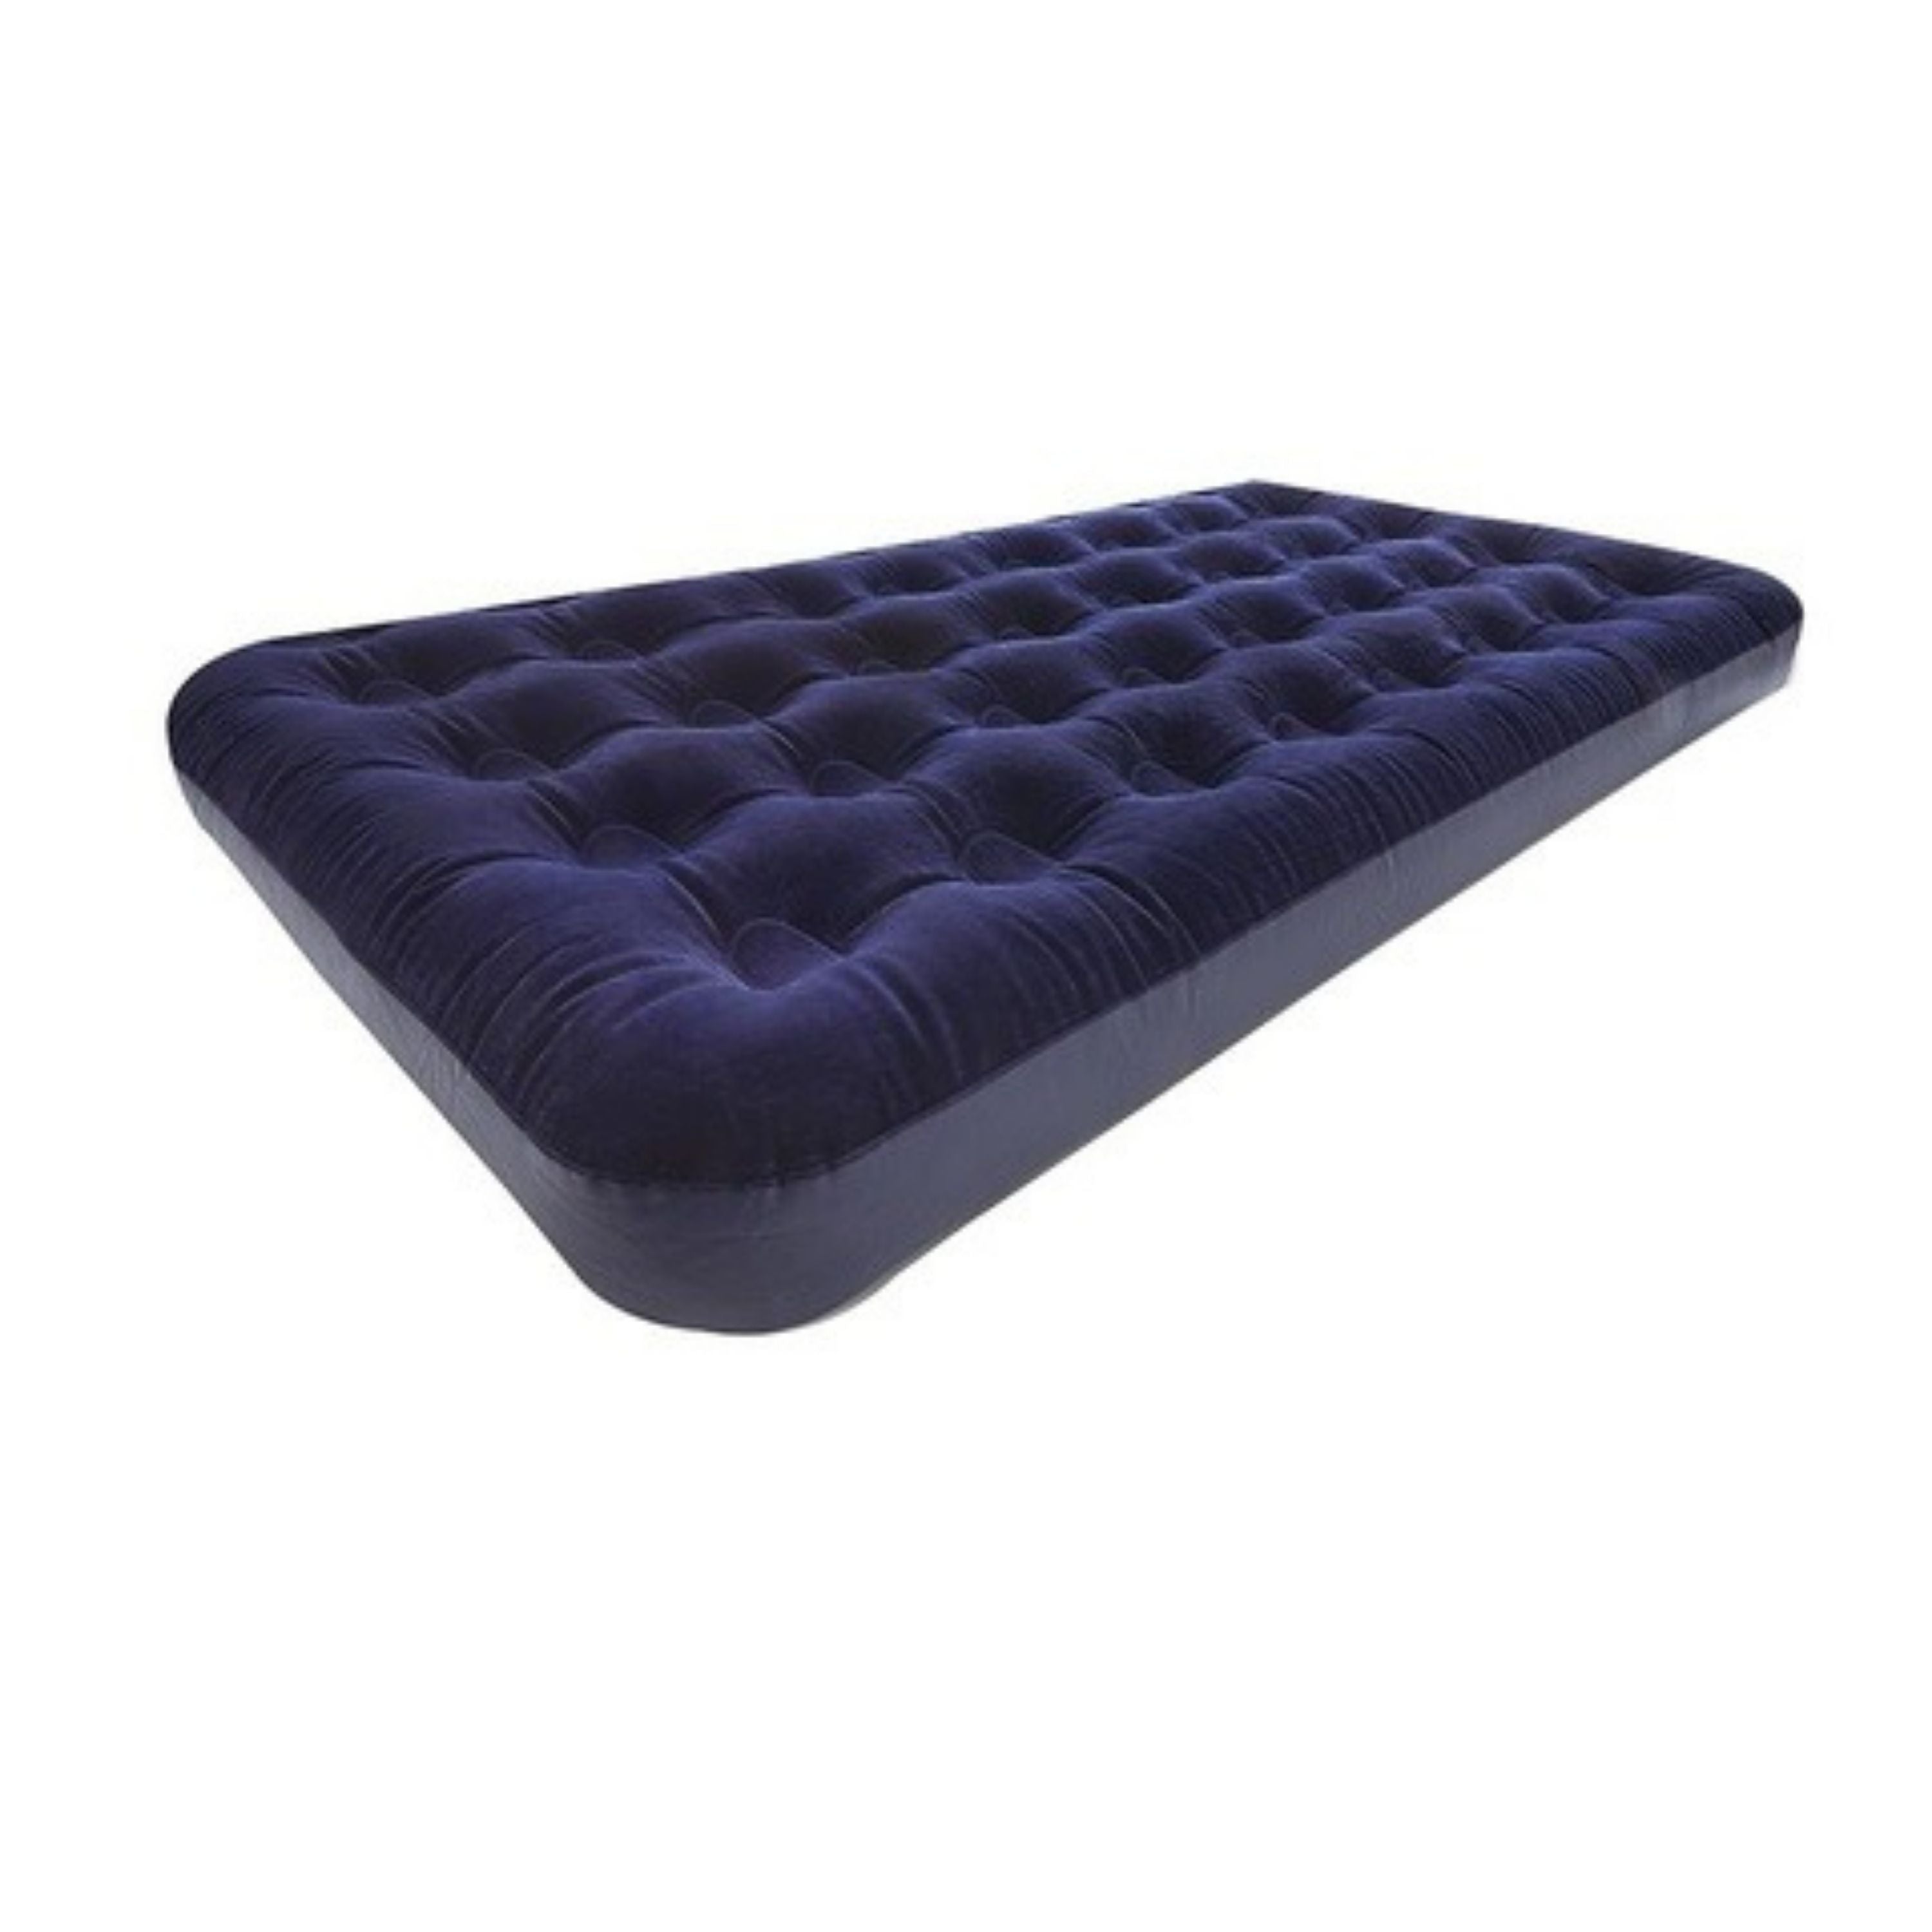 Air mattress - single